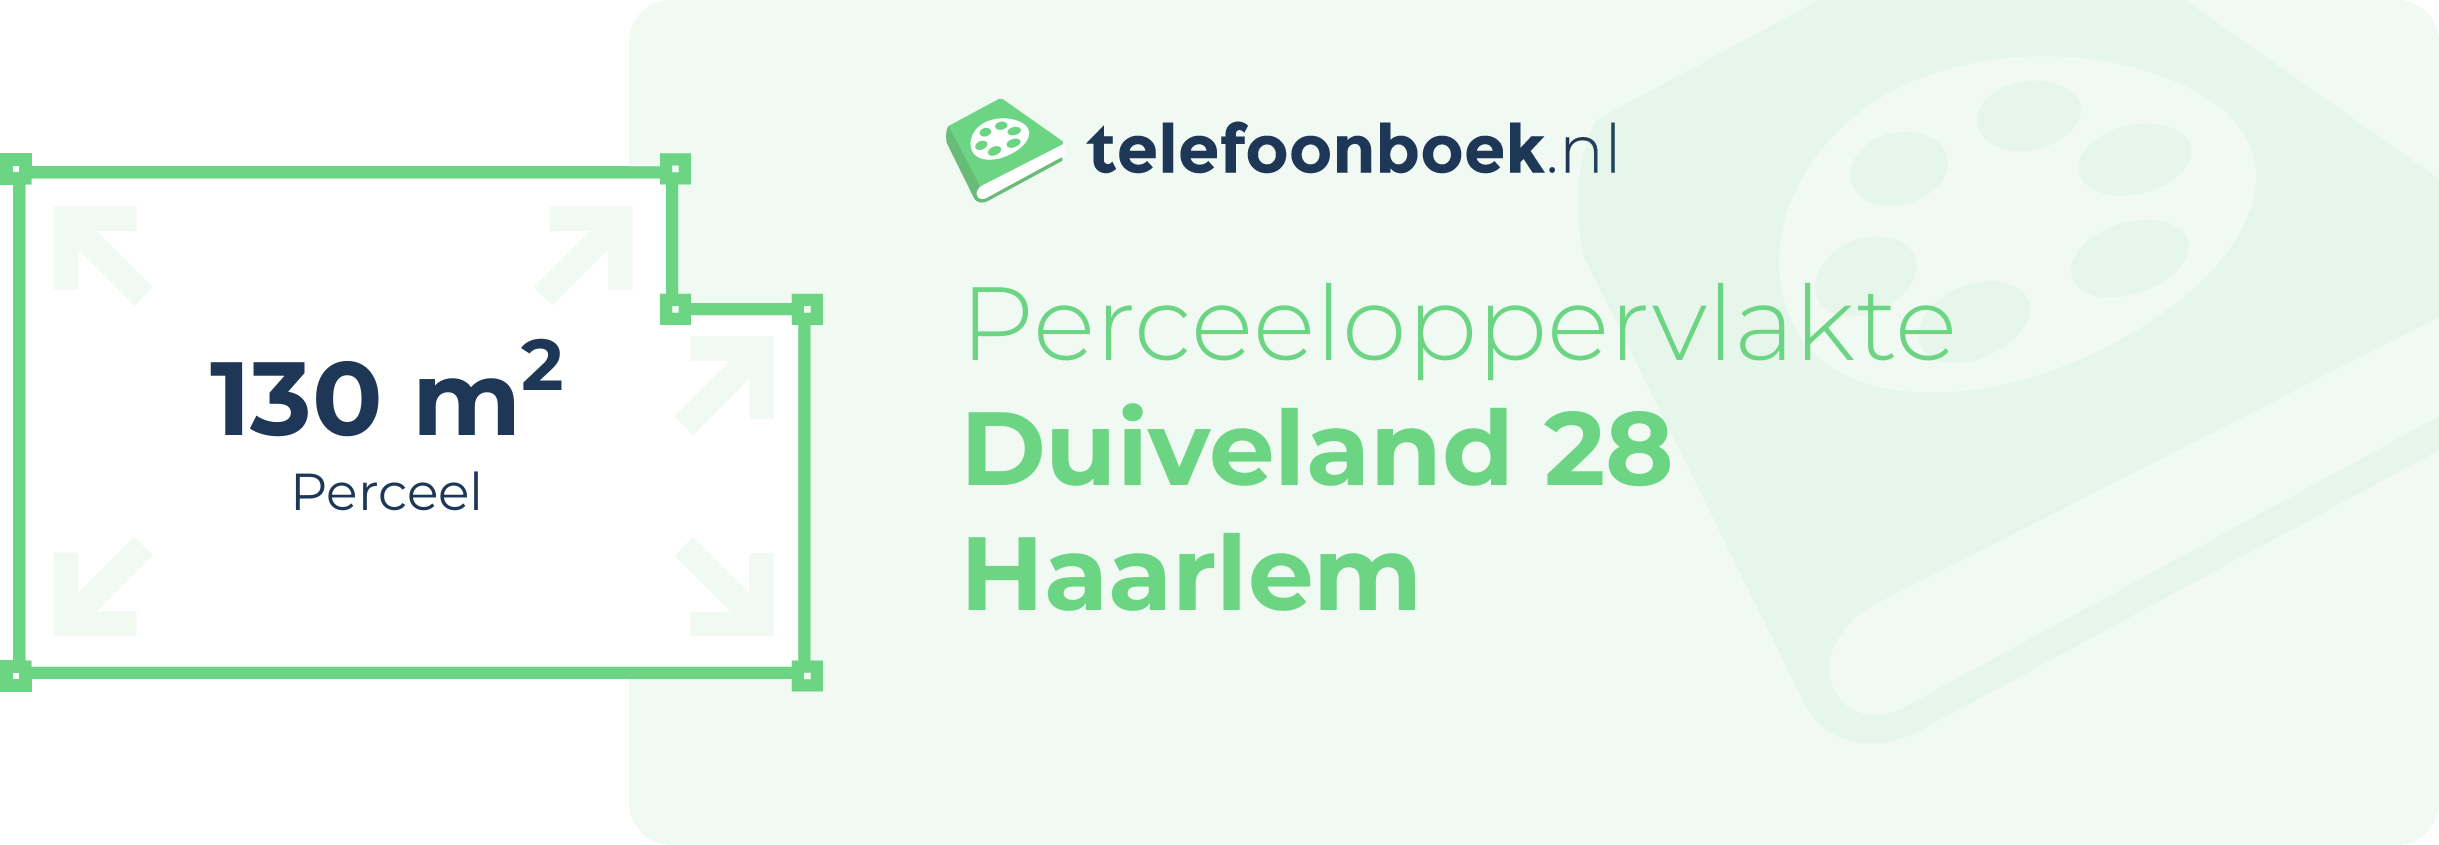 Perceeloppervlakte Duiveland 28 Haarlem